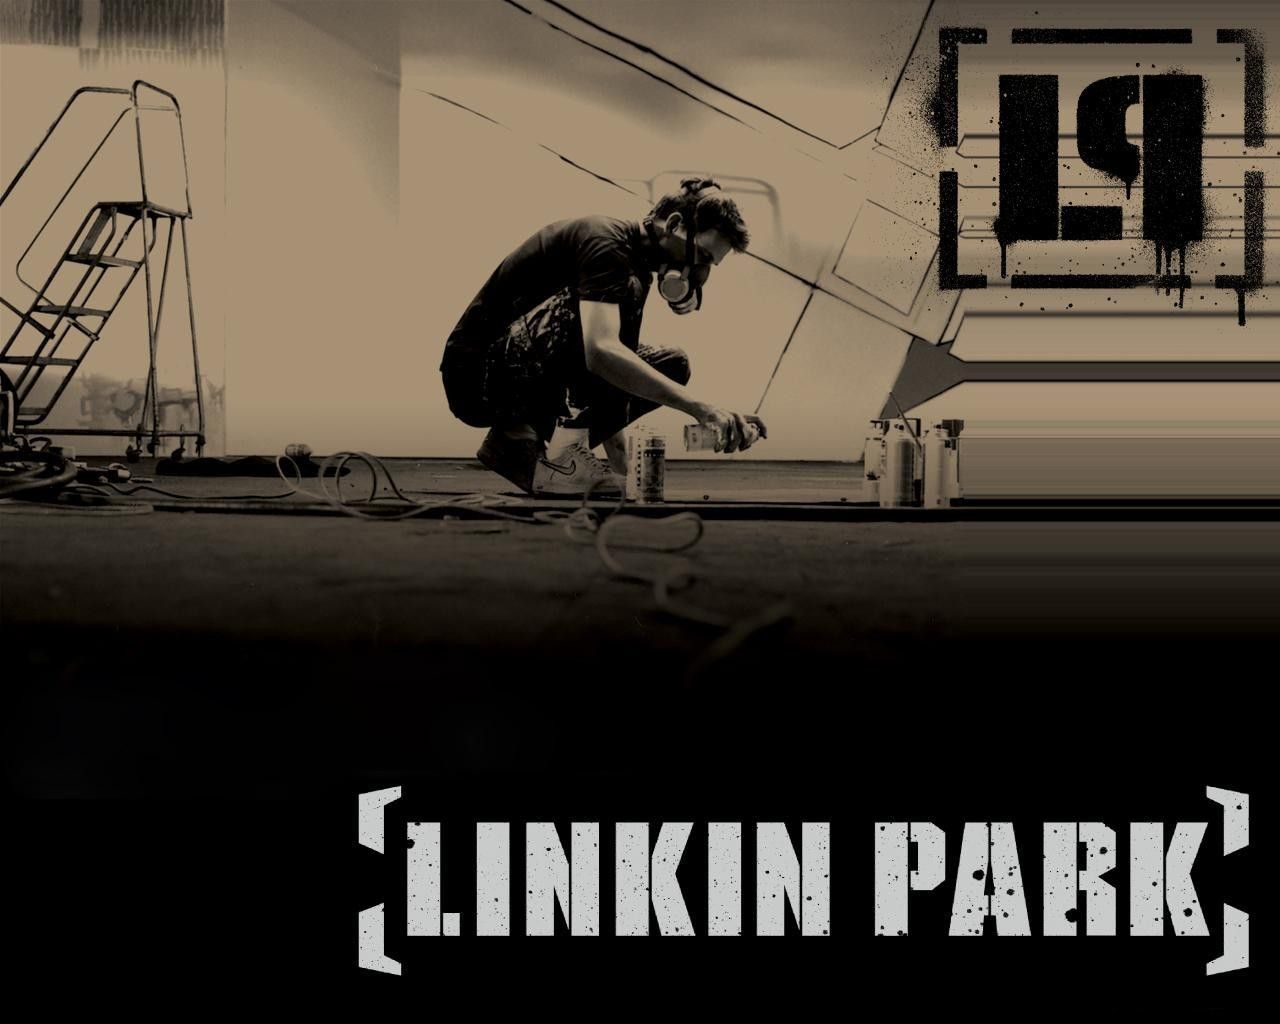 Linkin park meteora instrumentals download torrent